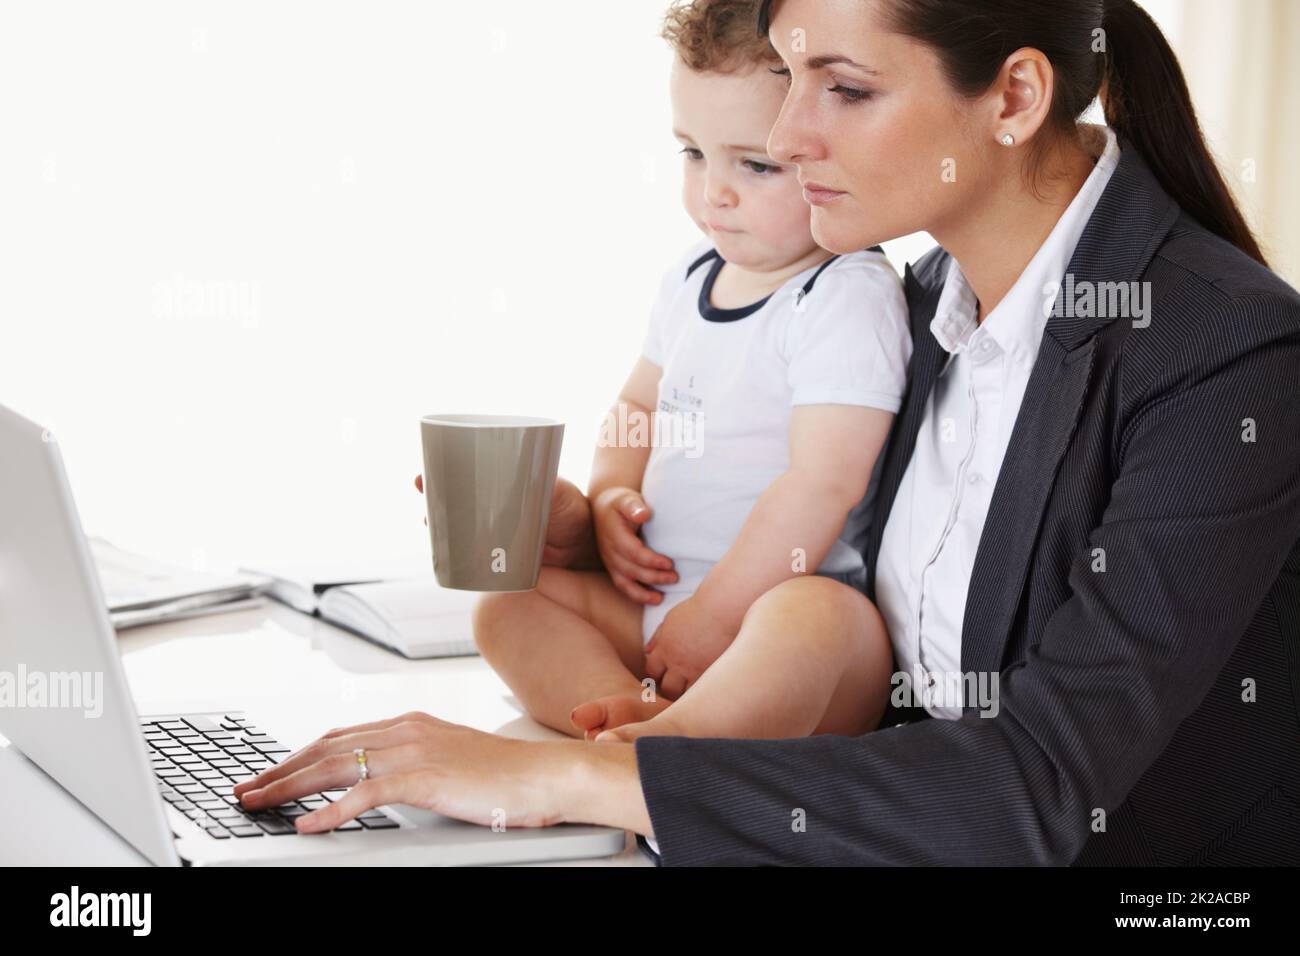 Maman qui travaille. Jeune mère qui travaille tient un bébé tout en travaillant et en buvant du café. Banque D'Images